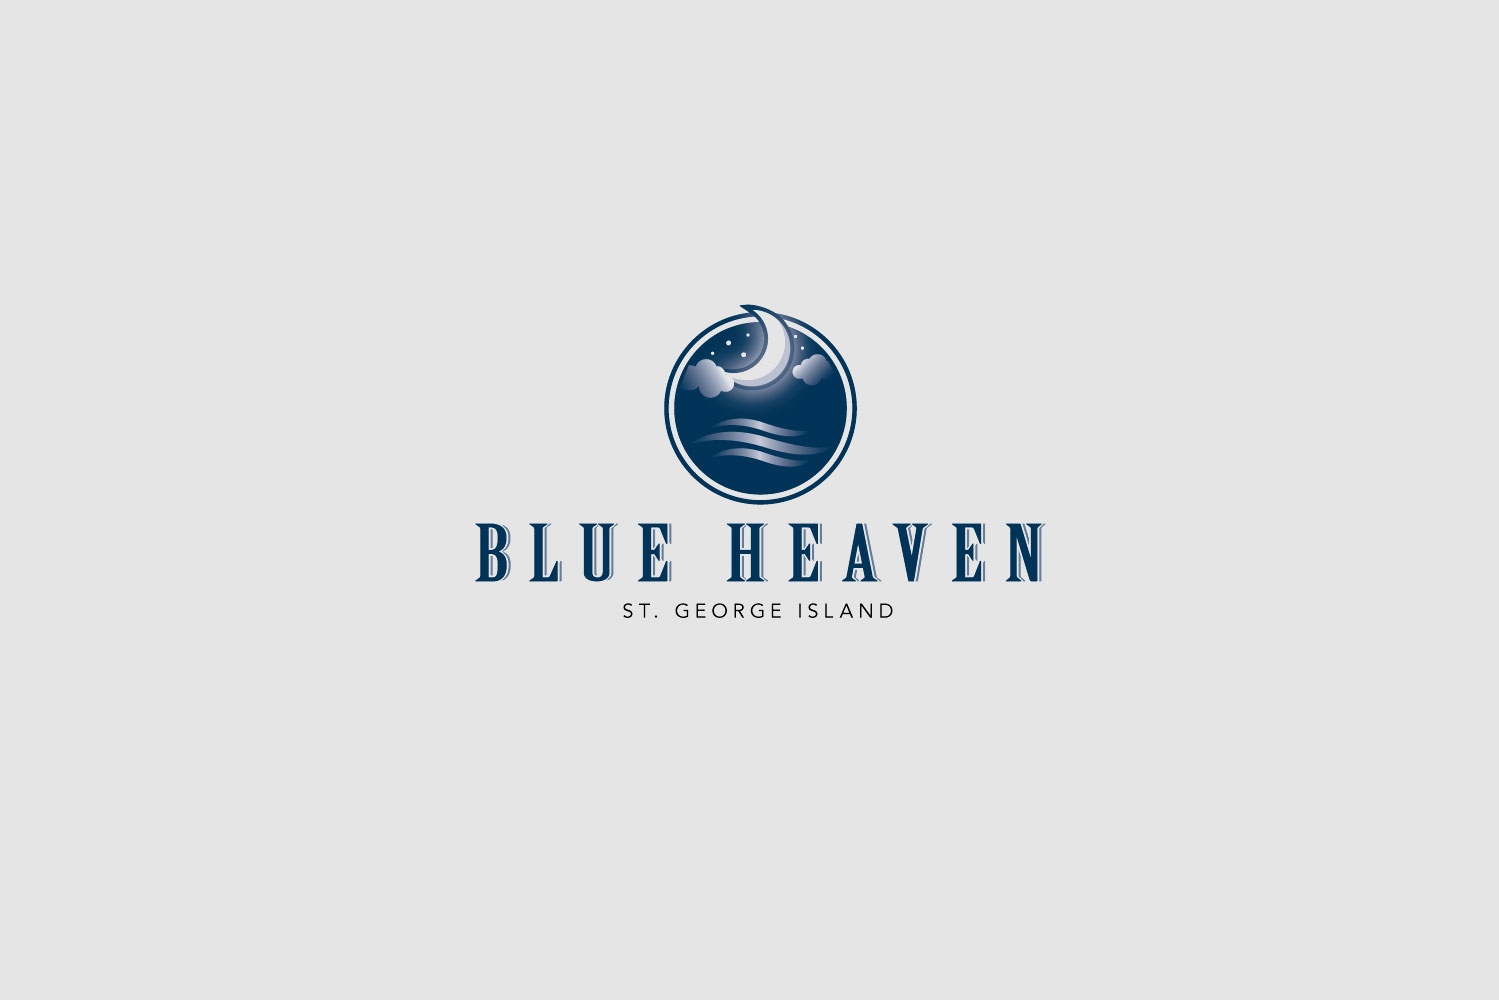 Blue Heaven York - York based Lebanese-inspired Bar & Grill